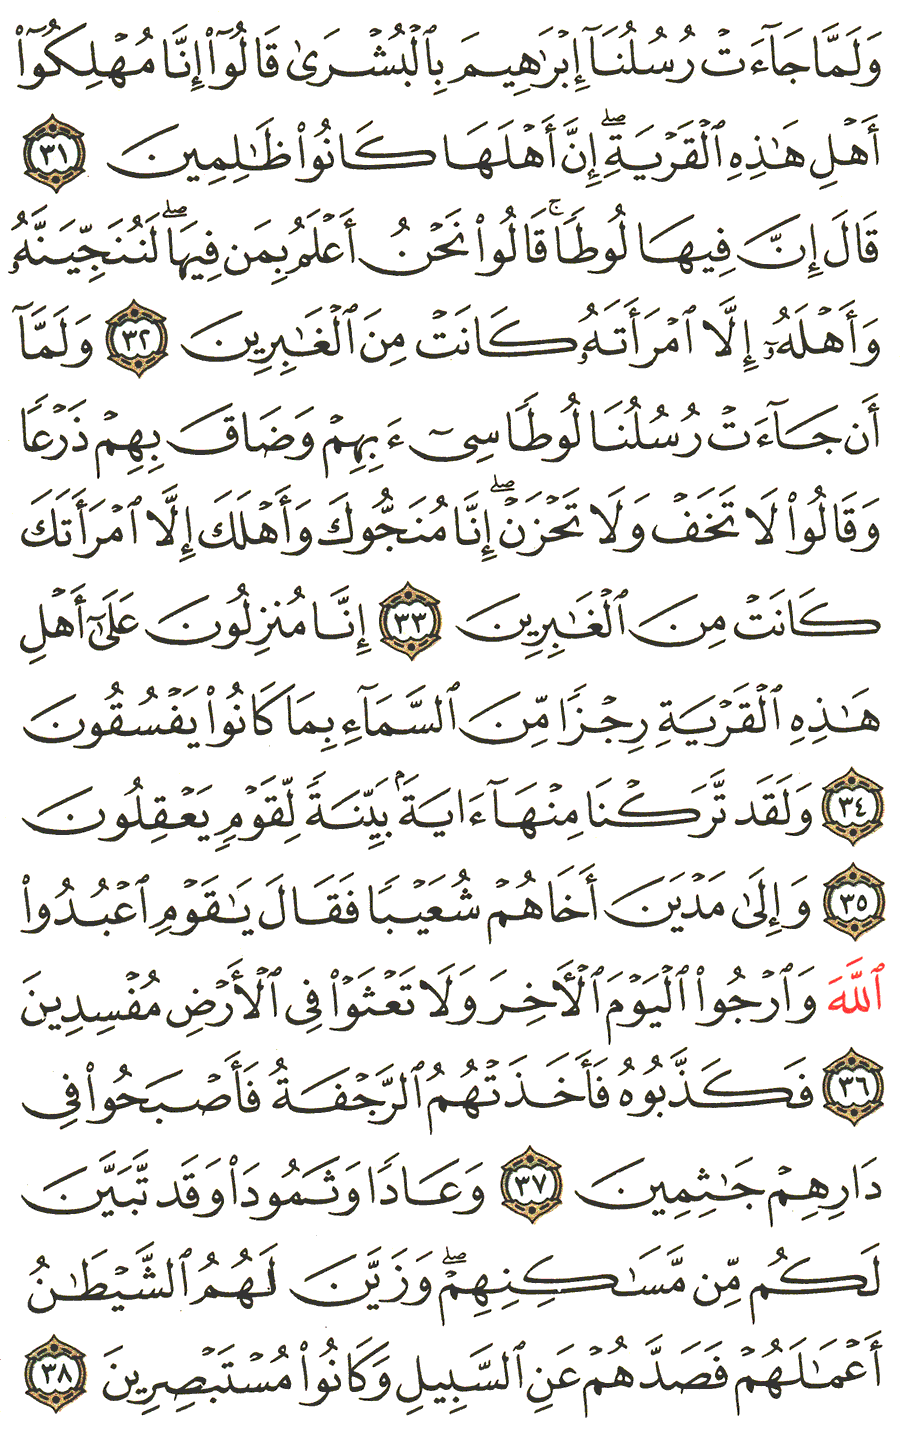 الصفحة رقم 400  من القرآن الكريم مكتوبة من المصحف